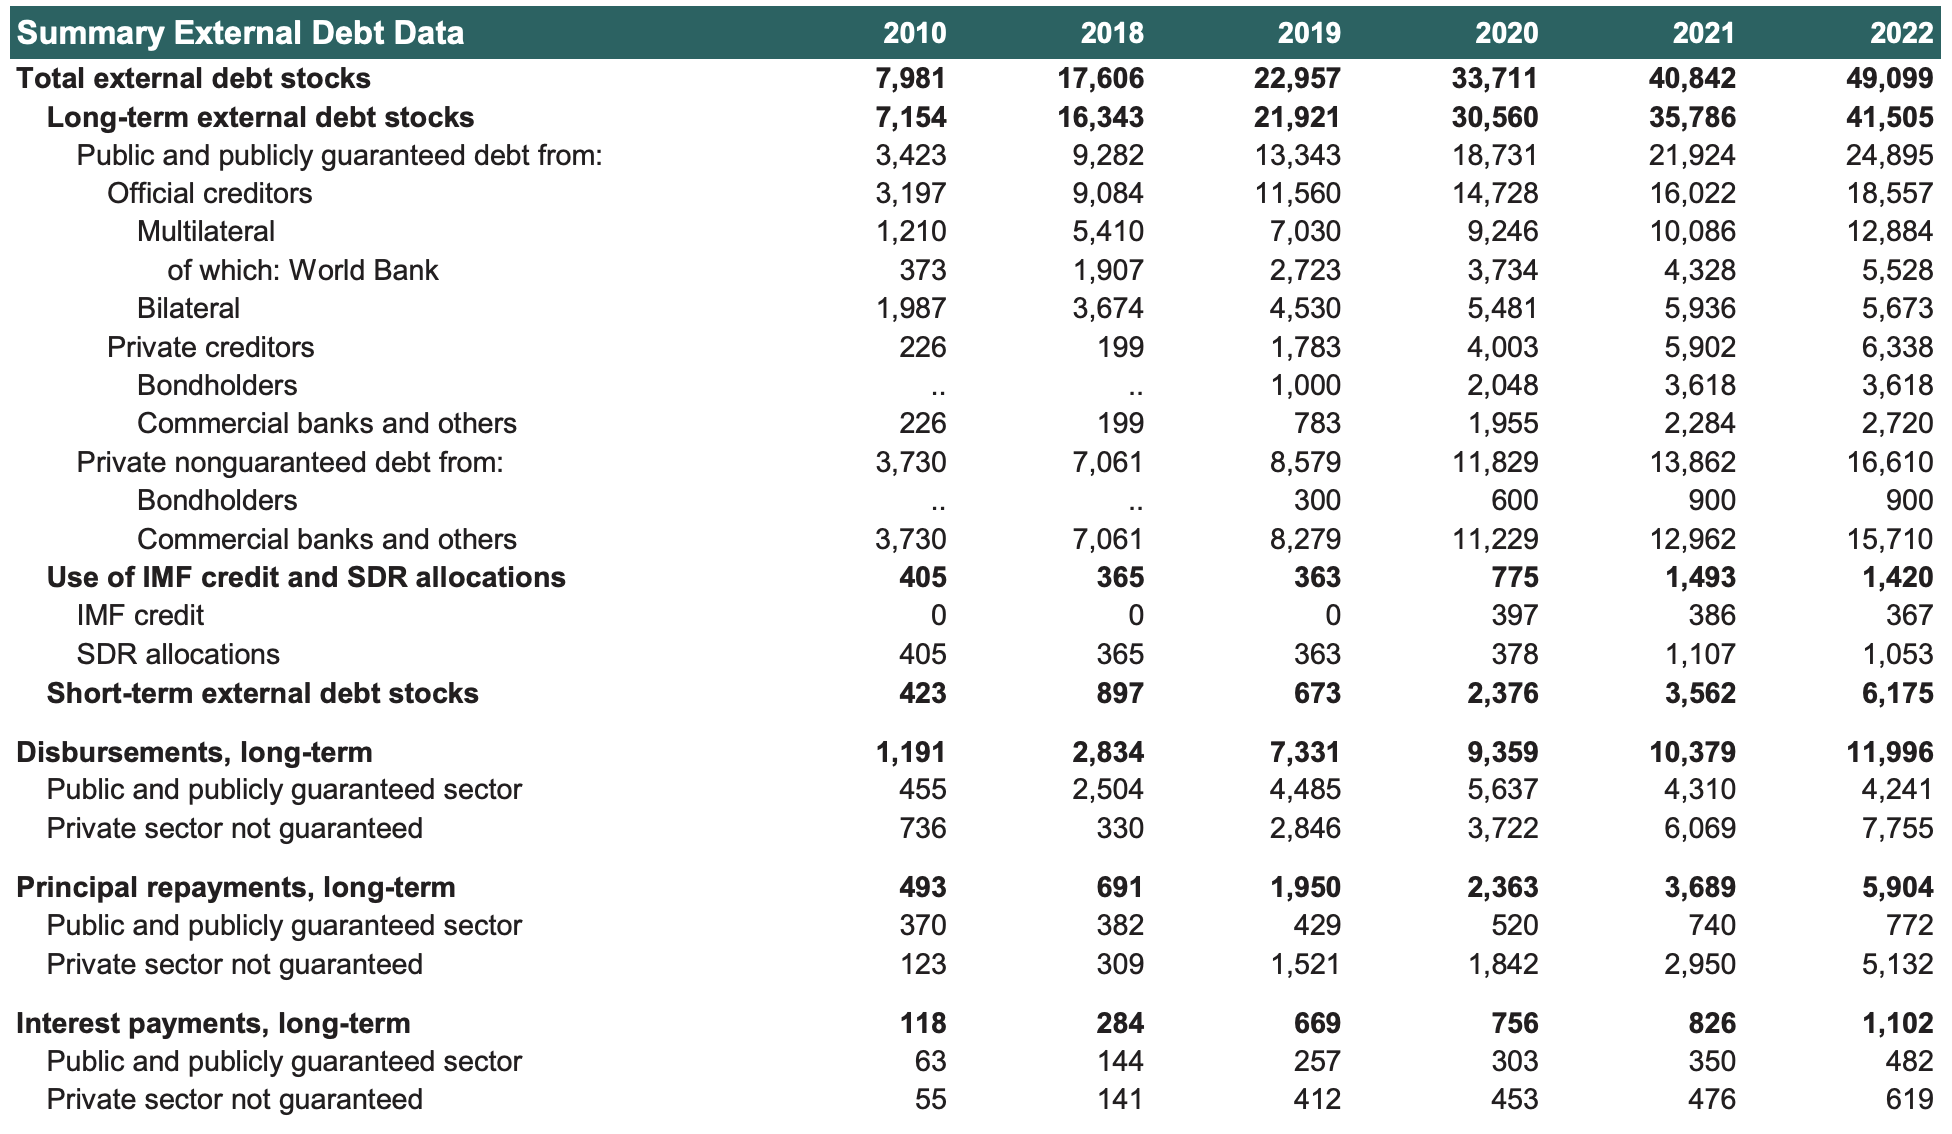 Summary External Debt Data Uzbekistan 2010-2022